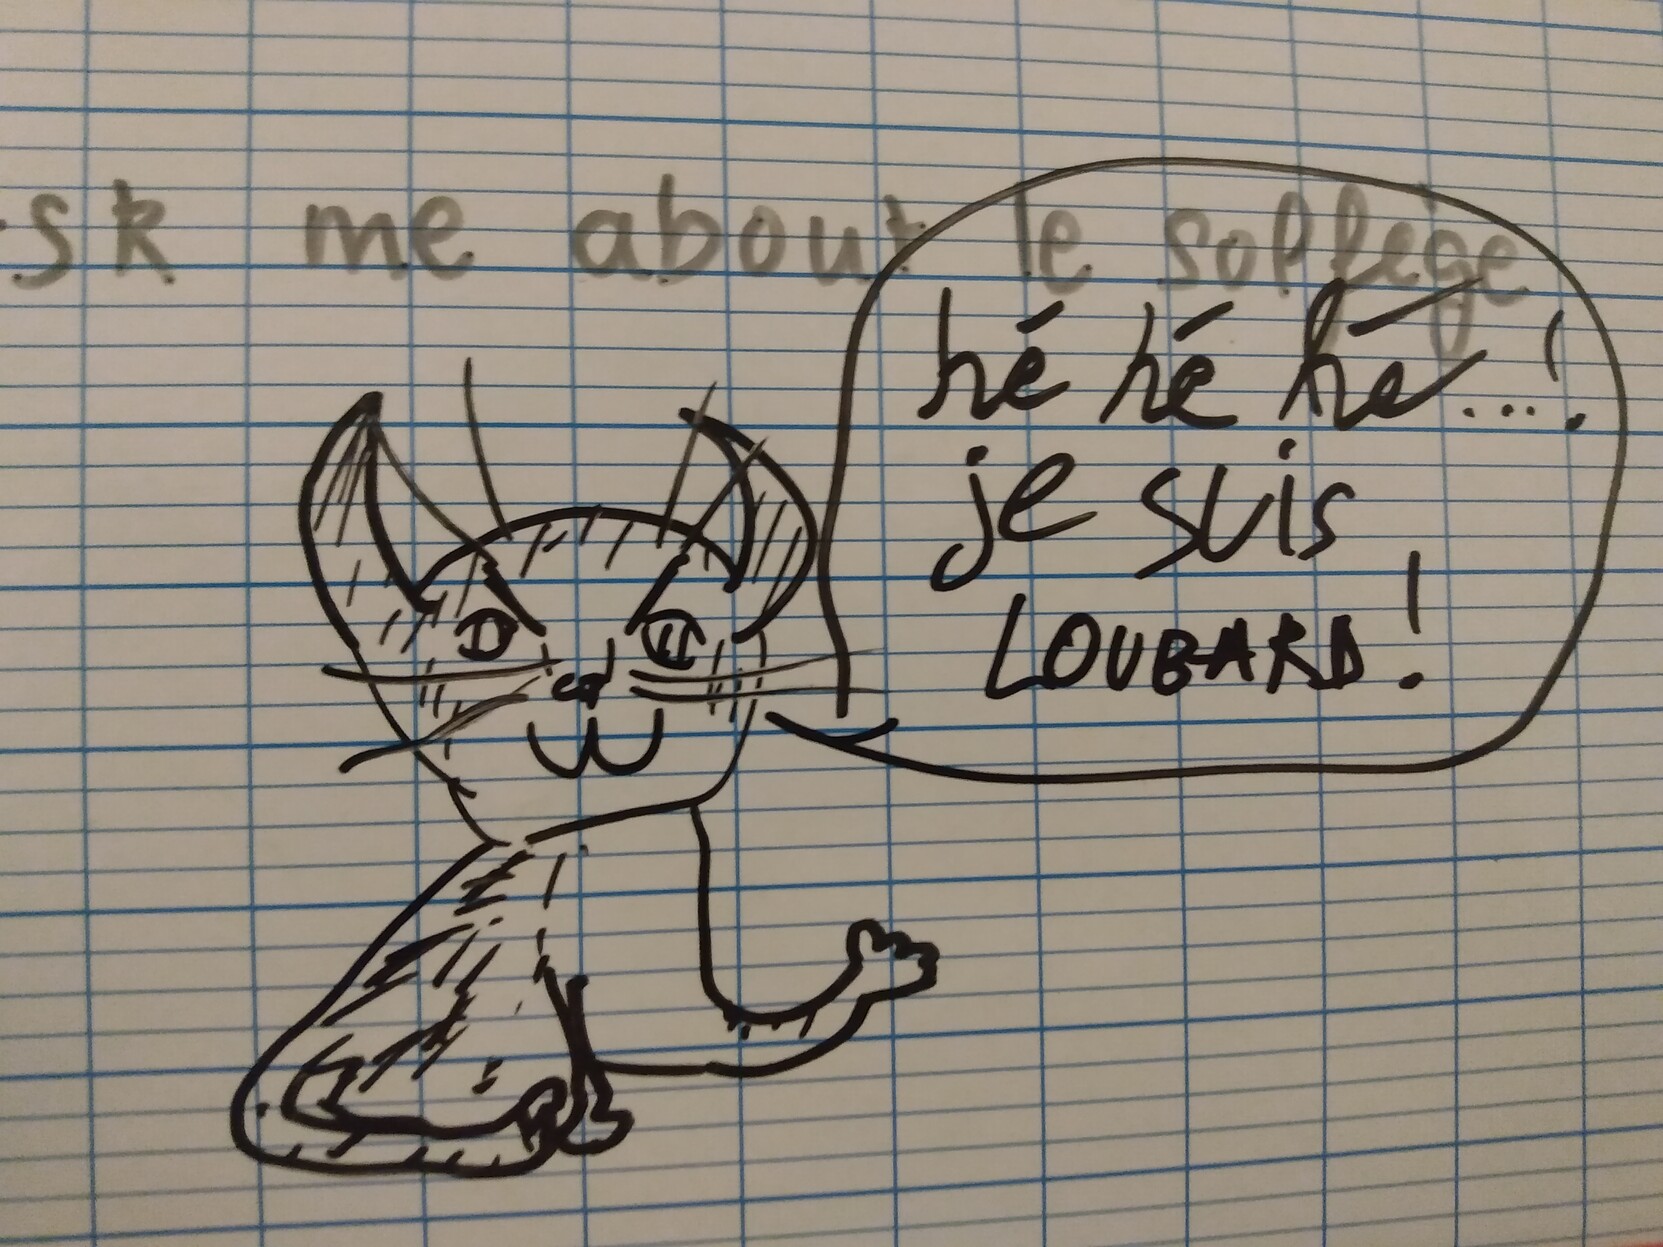 Le méchant chat Loubard est dessiné sur une ardoise et s'exprime ainsi : 